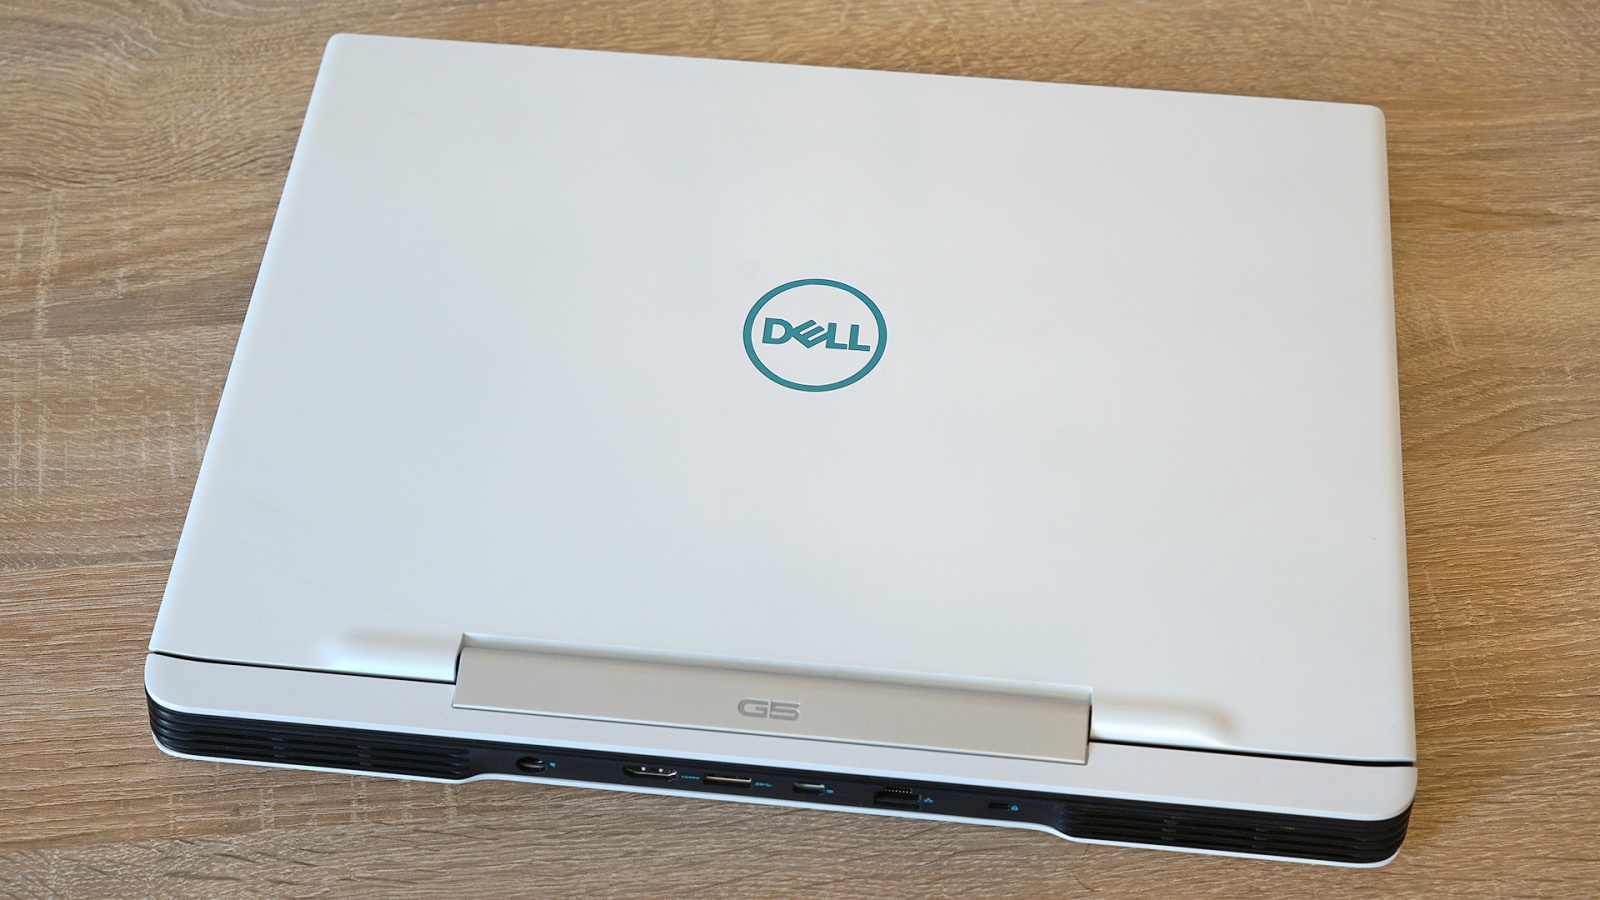 Dell G5 5590: один из самых доступных игровых ноутбуков с RTX 2060 - 3